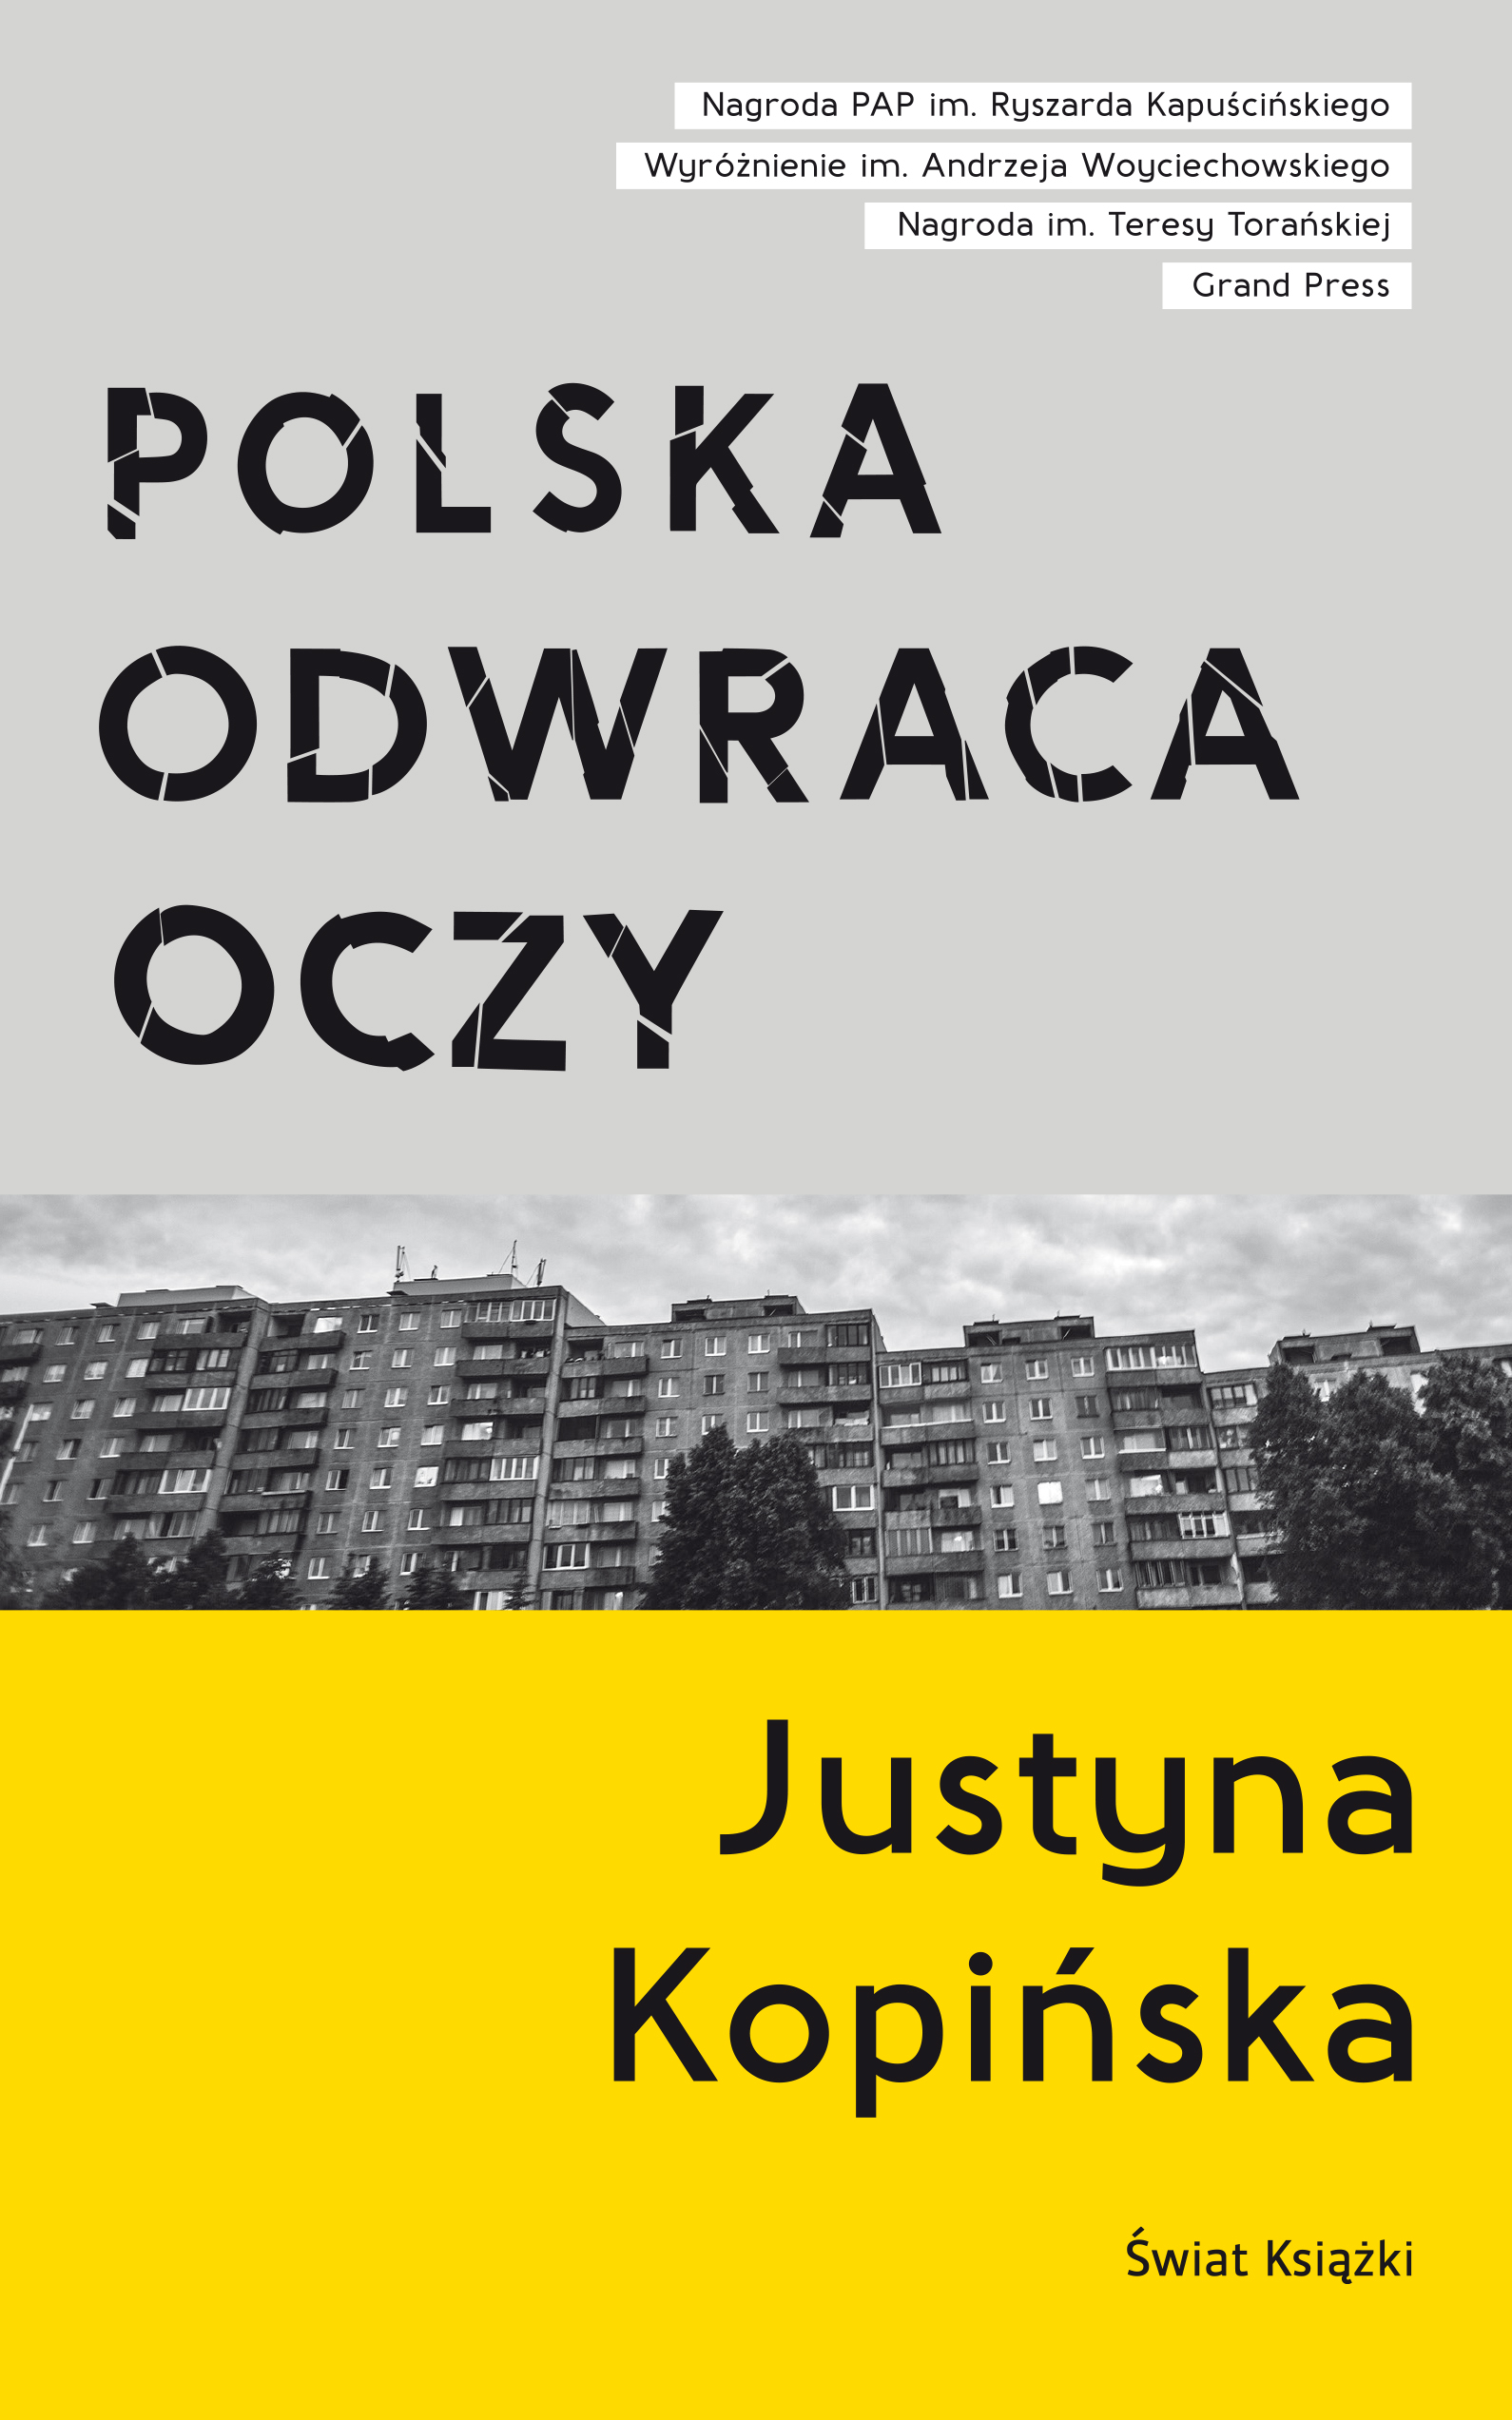 Okładka książki „Polska odwraca oczy” autorstwa Justyny Kopińskiej